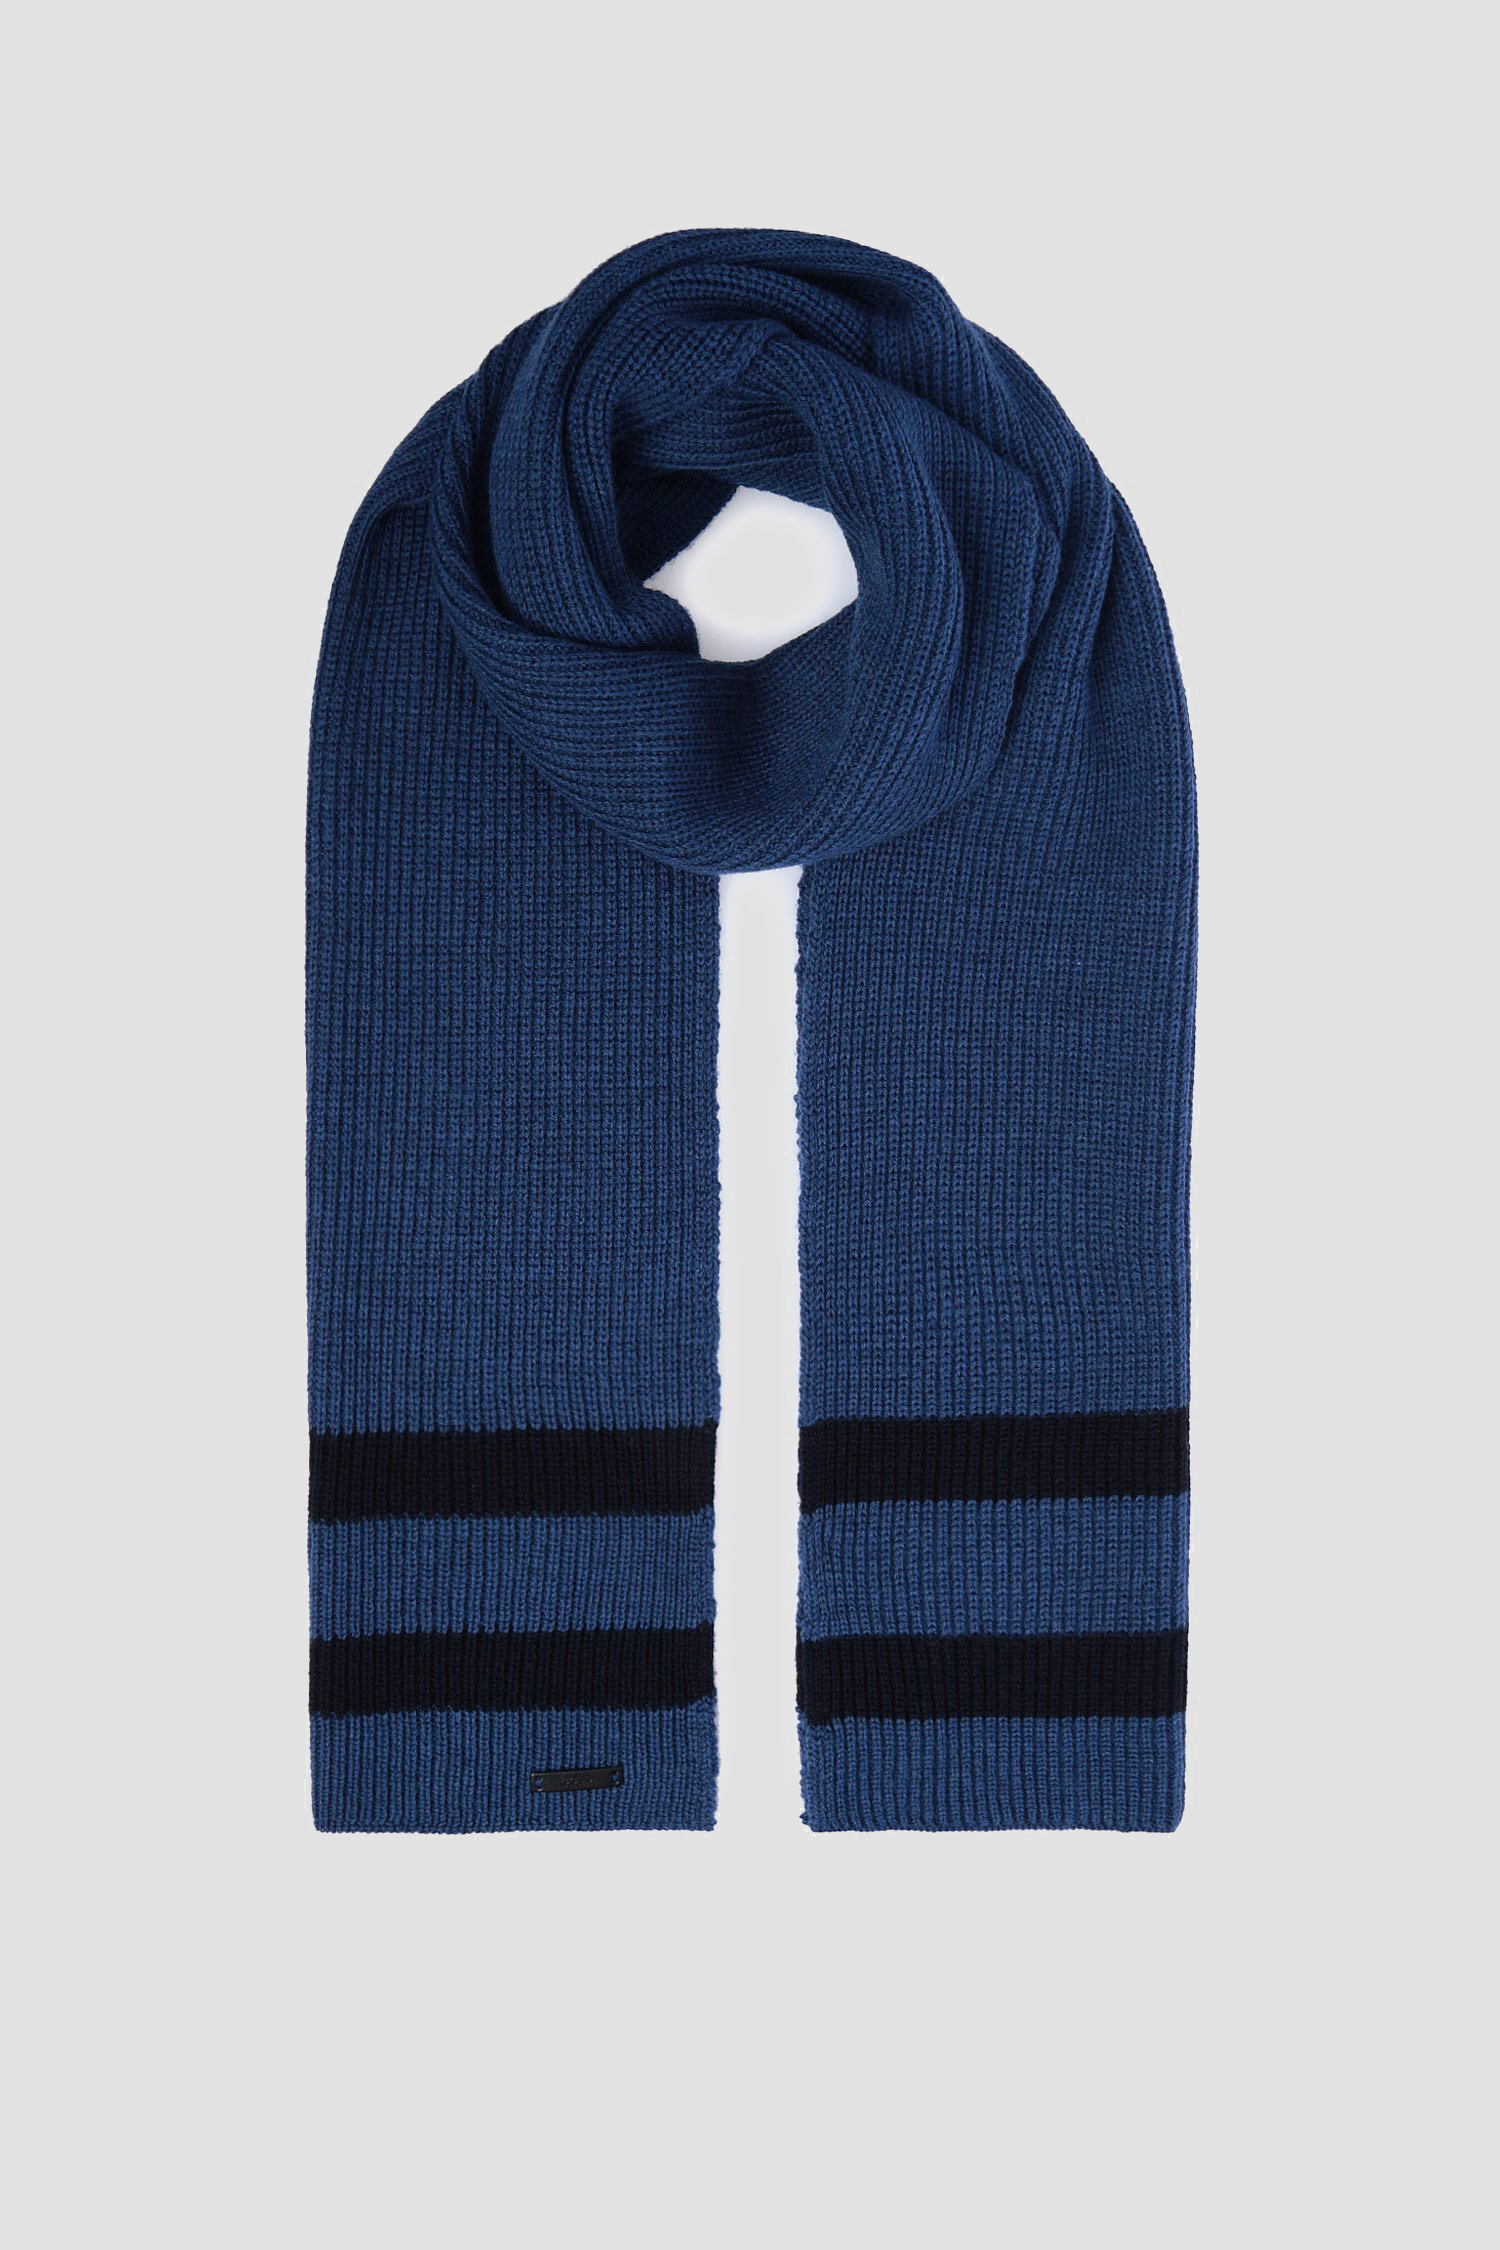 Мужской синий шерстяной шарф 1